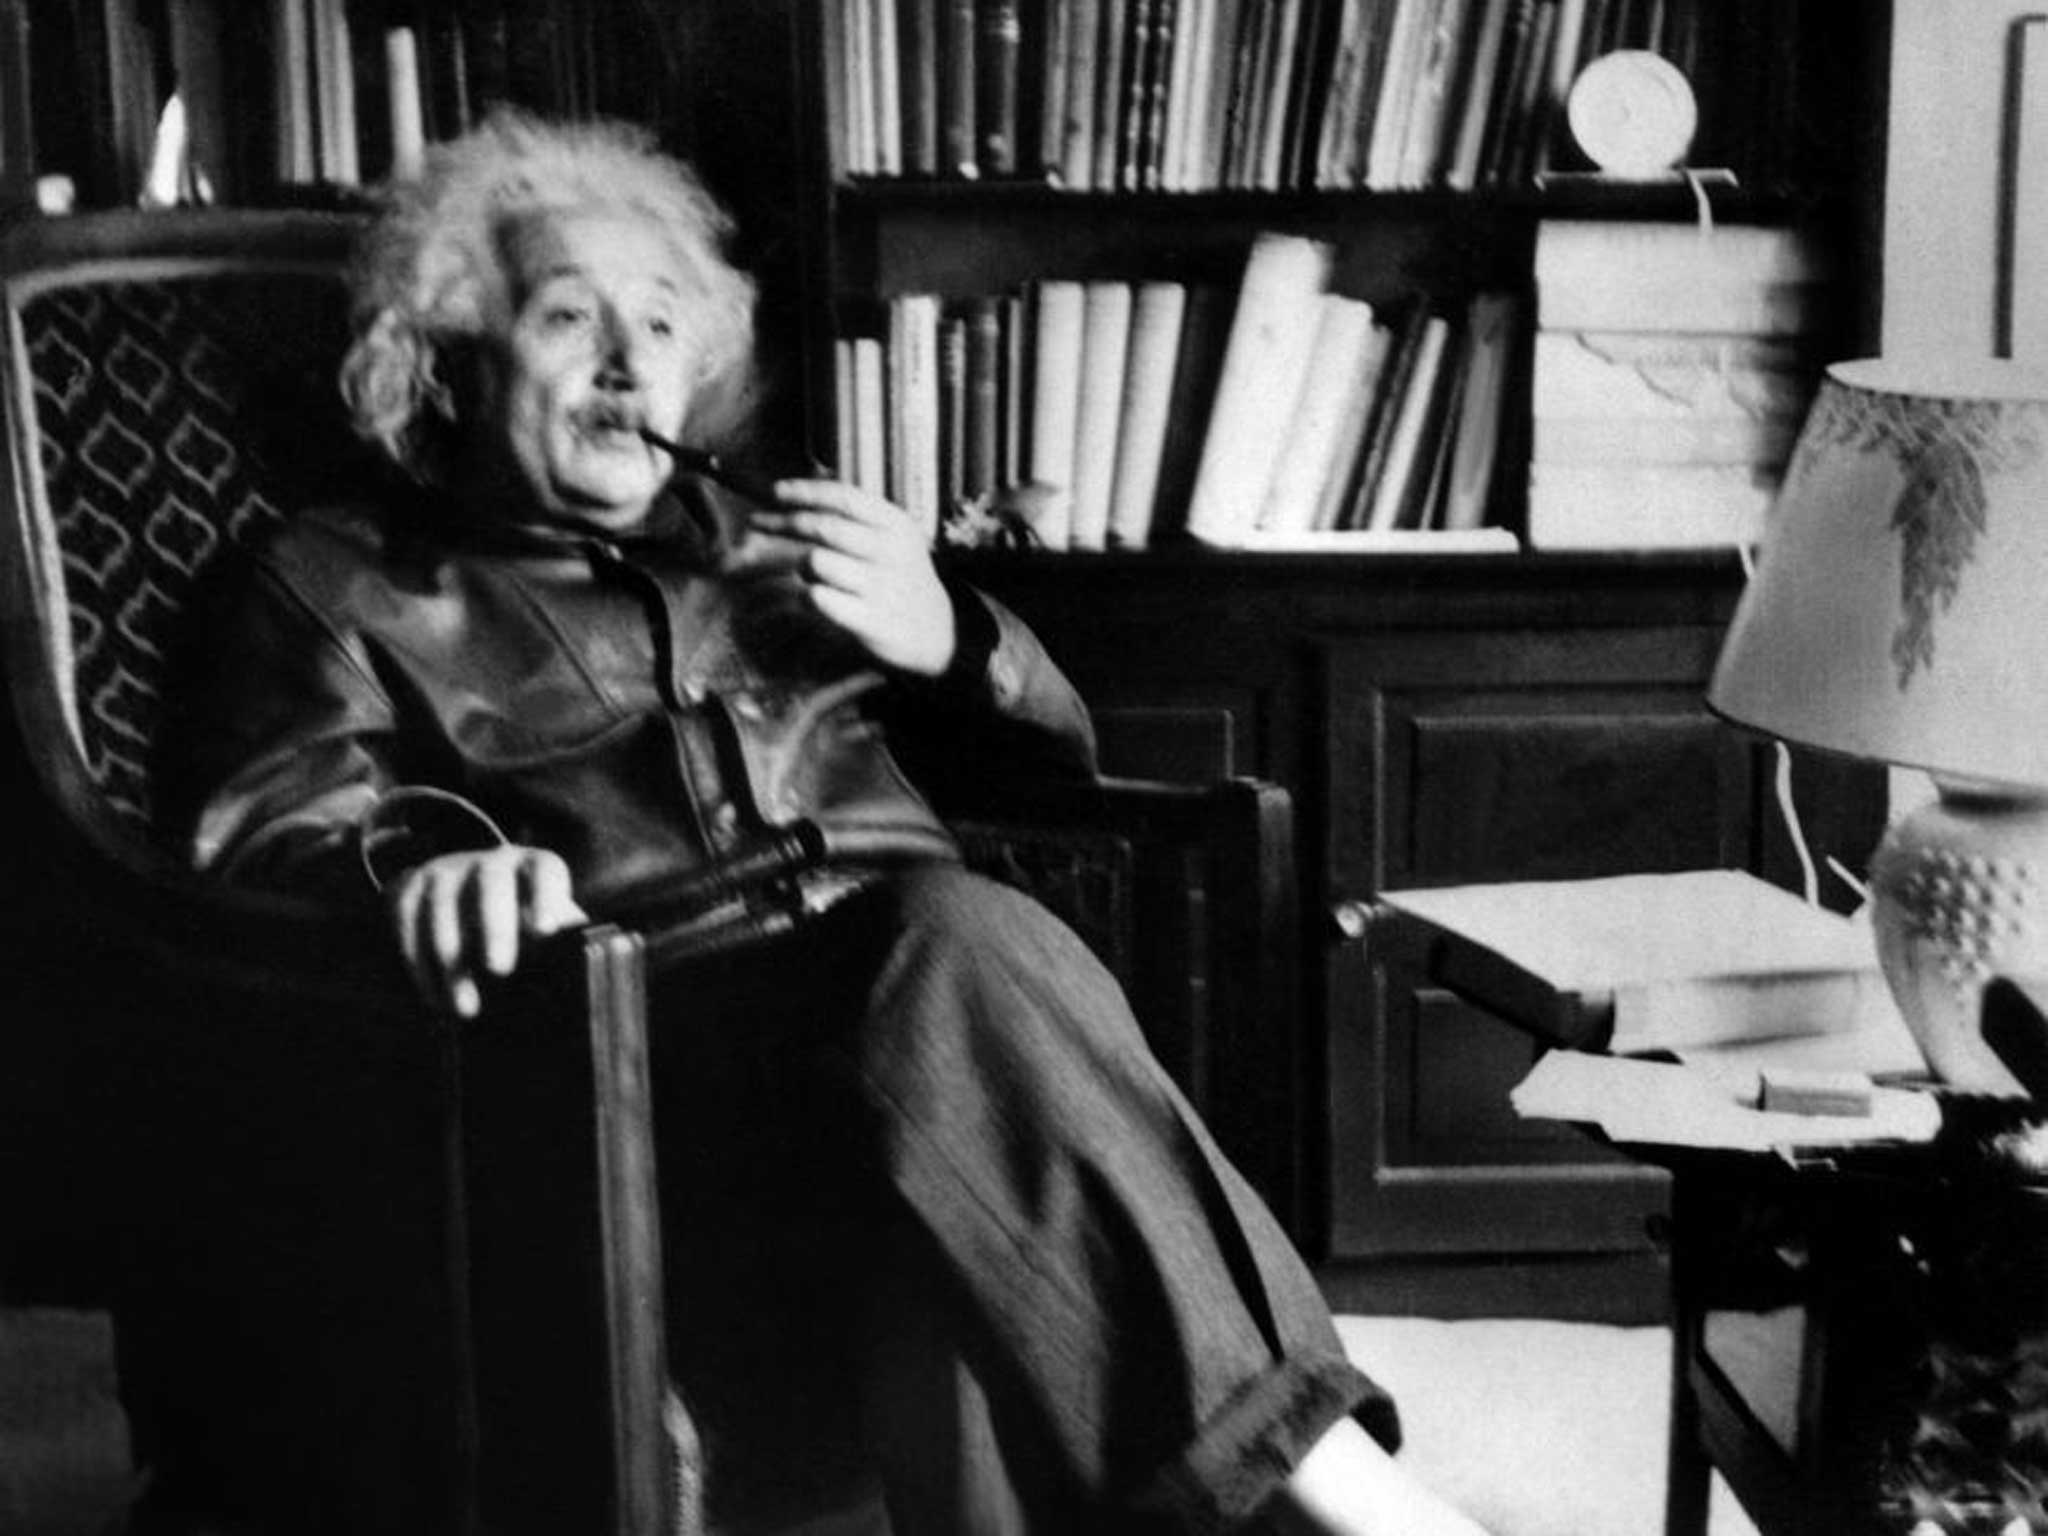 Another cack-handed genius: Albert Einstein